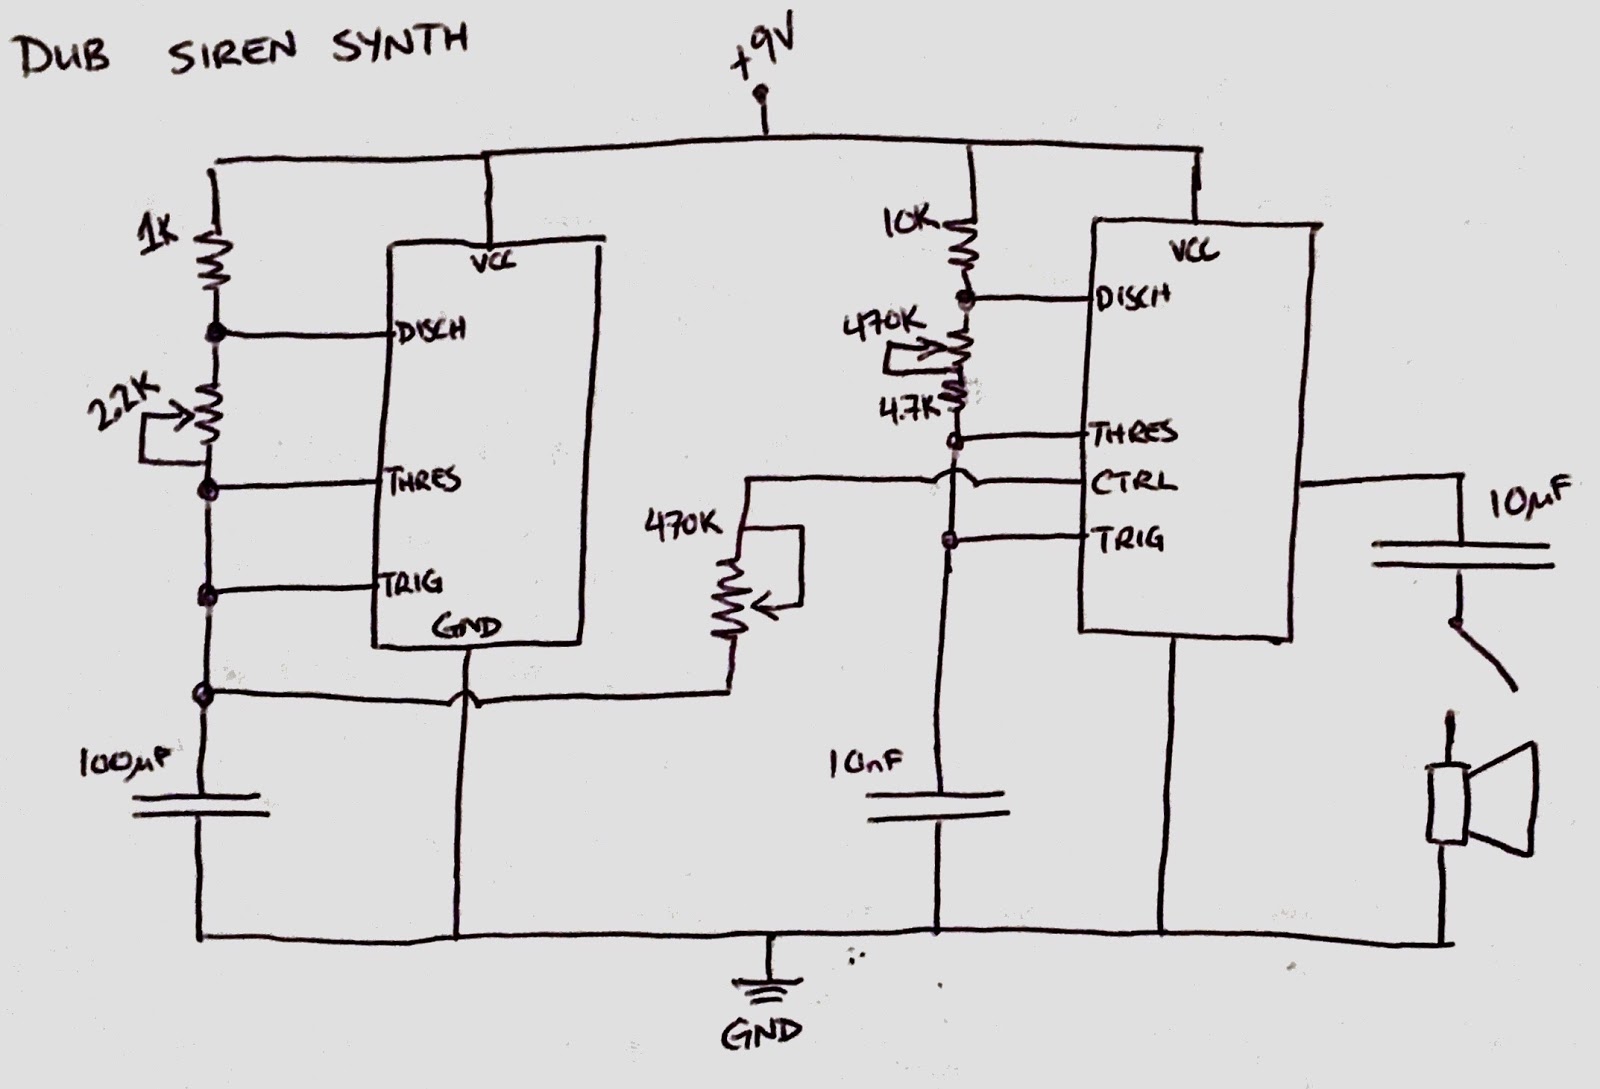 TWSU siren synth diagram